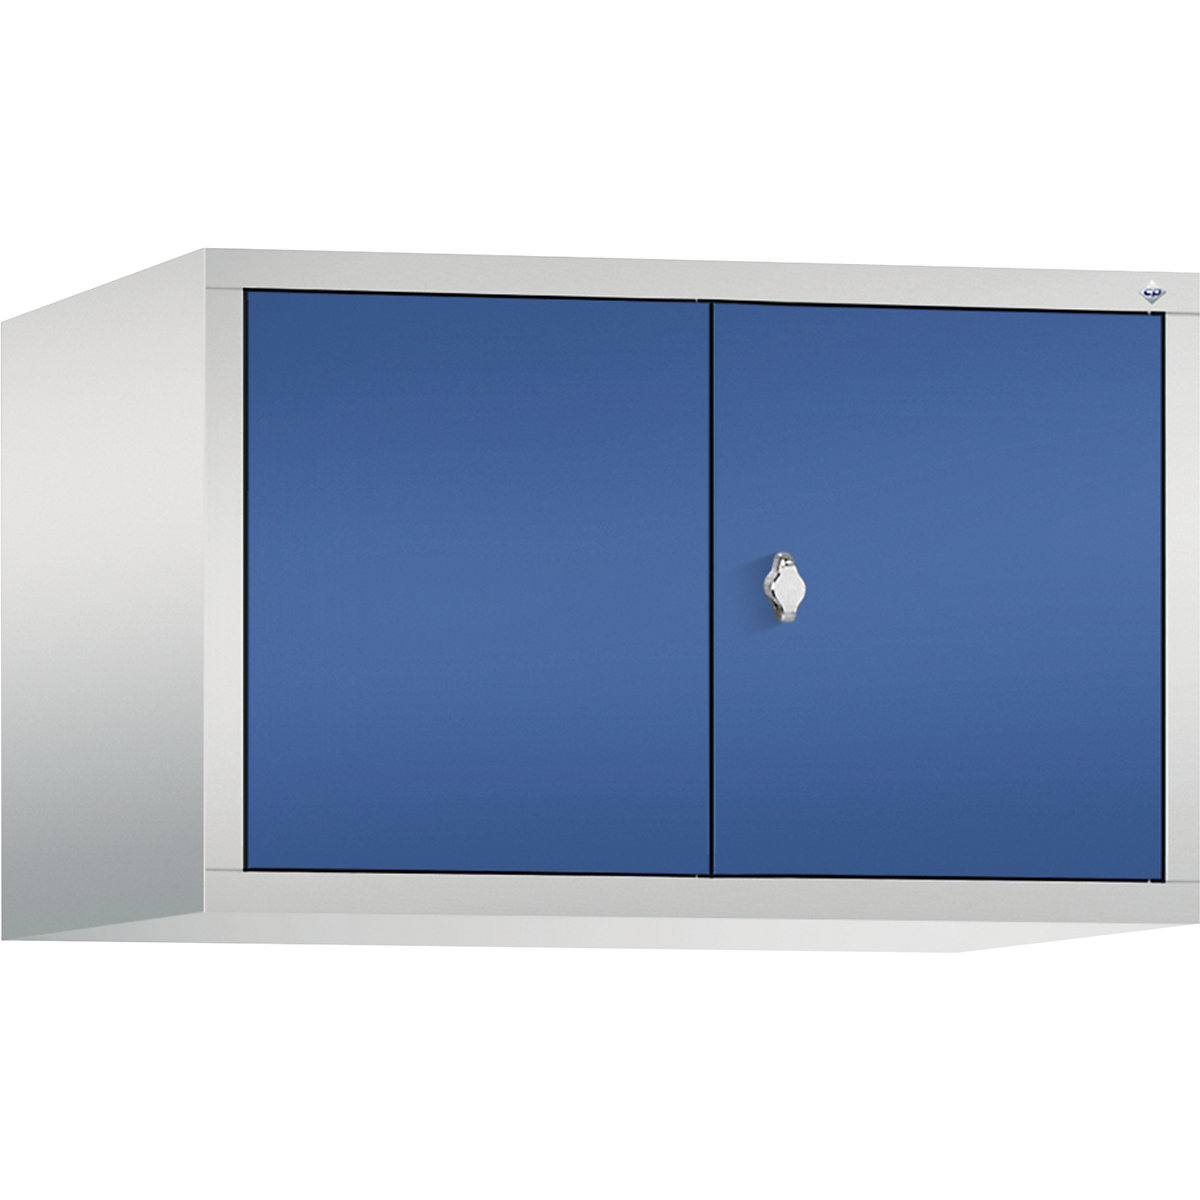 C+P – Altillo CLASSIC, puertas batientes que cierran al ras entre sí, 2 compartimentos, anchura de compartimento 400 mm, gris luminoso / azul genciana